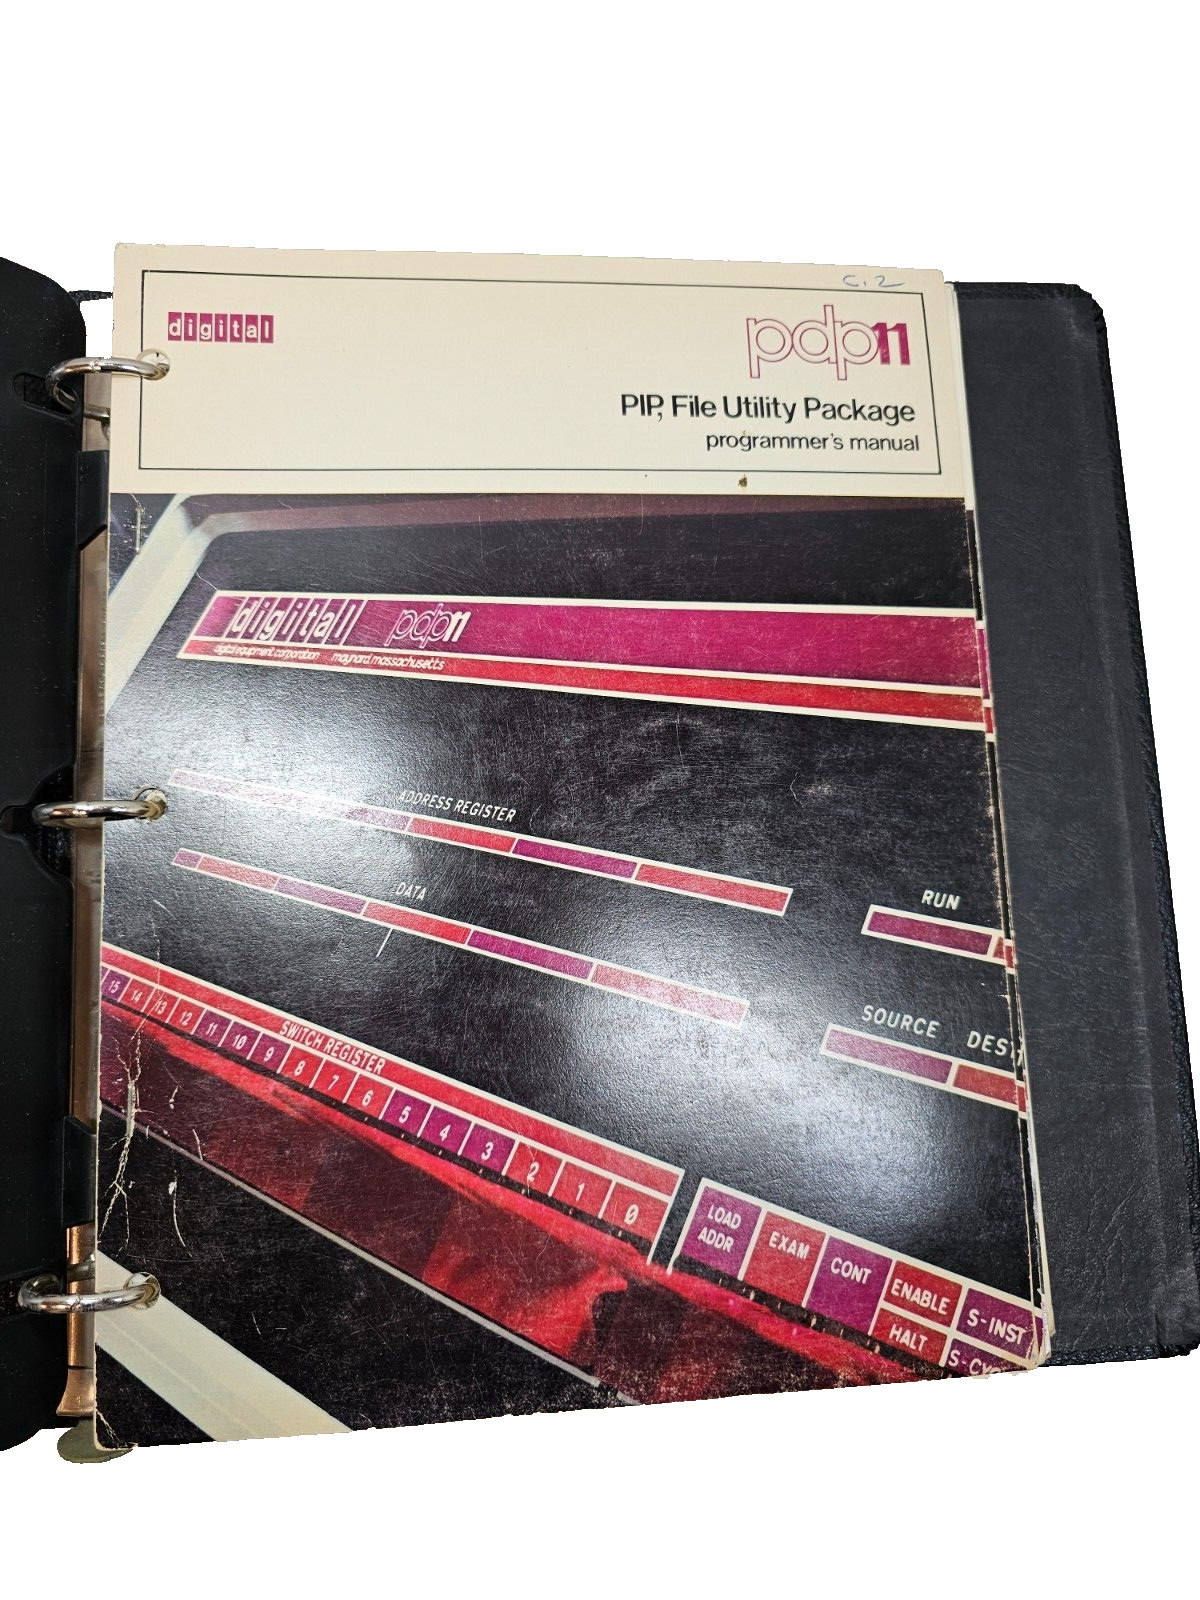 Vintage 71 Digital DEC PDP11 PIP File Utility Package, Text Editor ODT-11R Debug